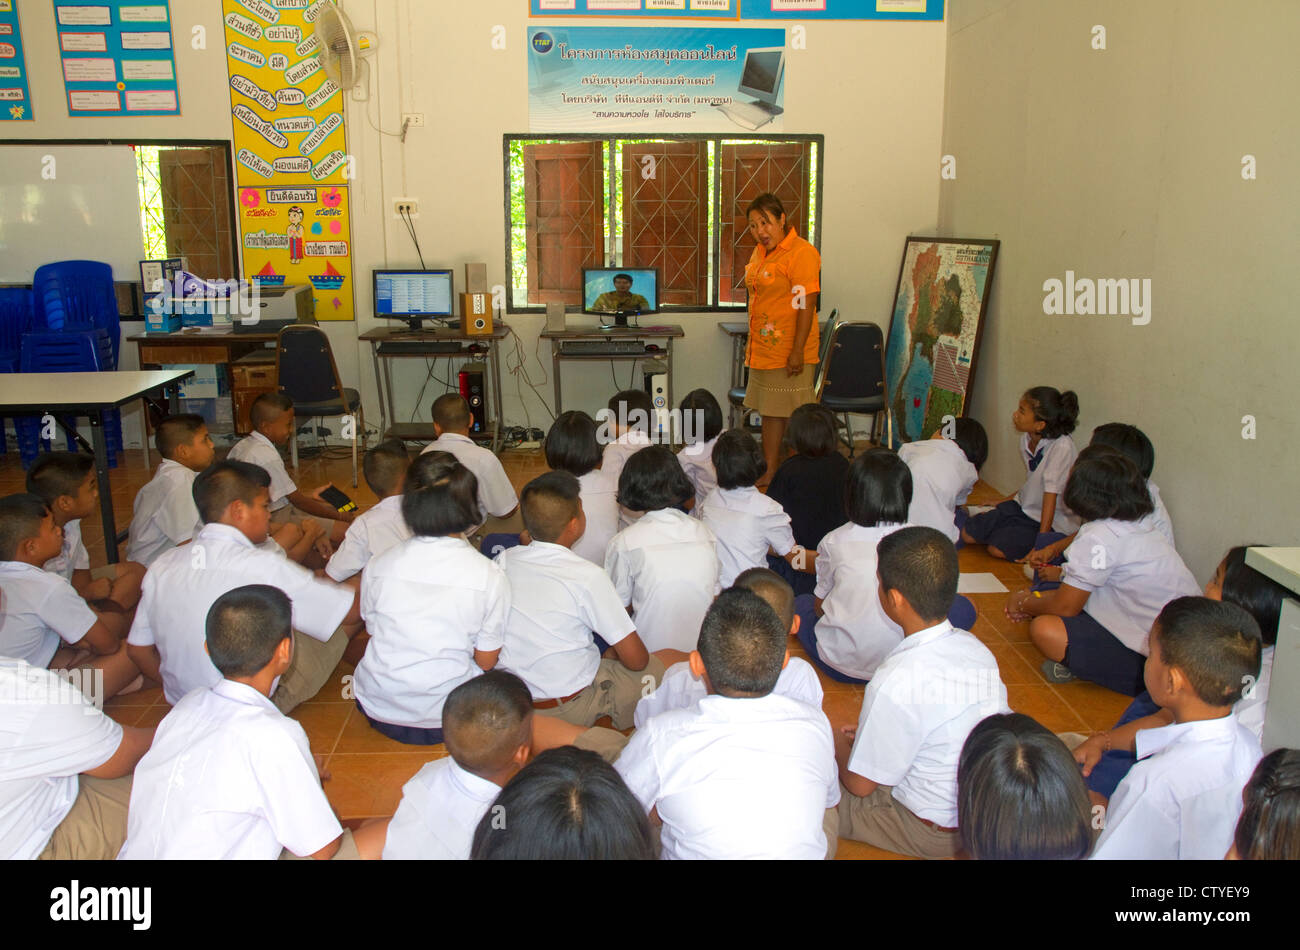 Les enfants fréquentent une école primaire thaï sur l'île de Ko Samui, Thaïlande. Banque D'Images